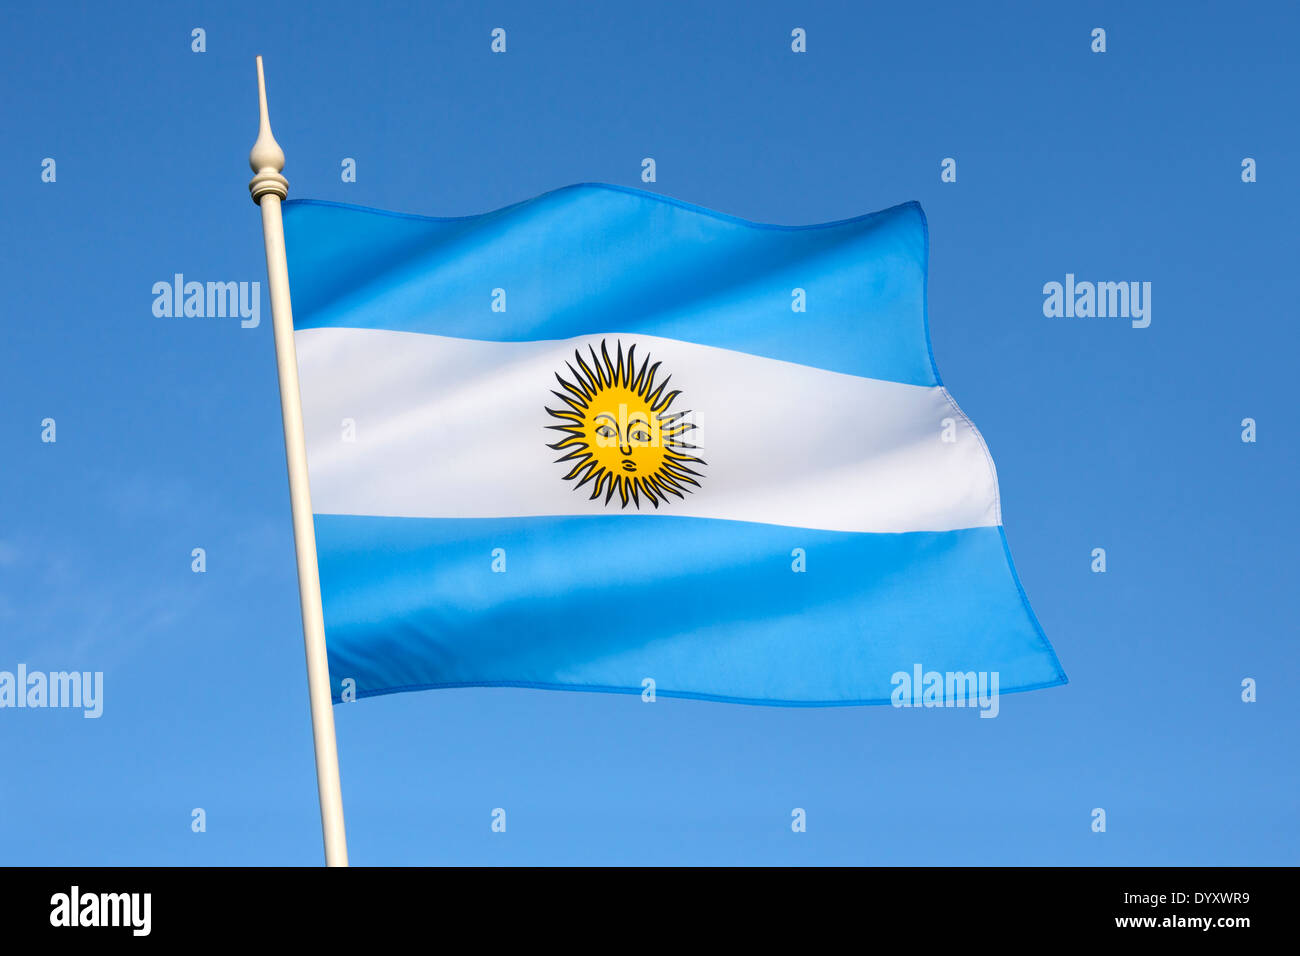 La bandera nacional del país sudamericano de Argentina. Foto de stock